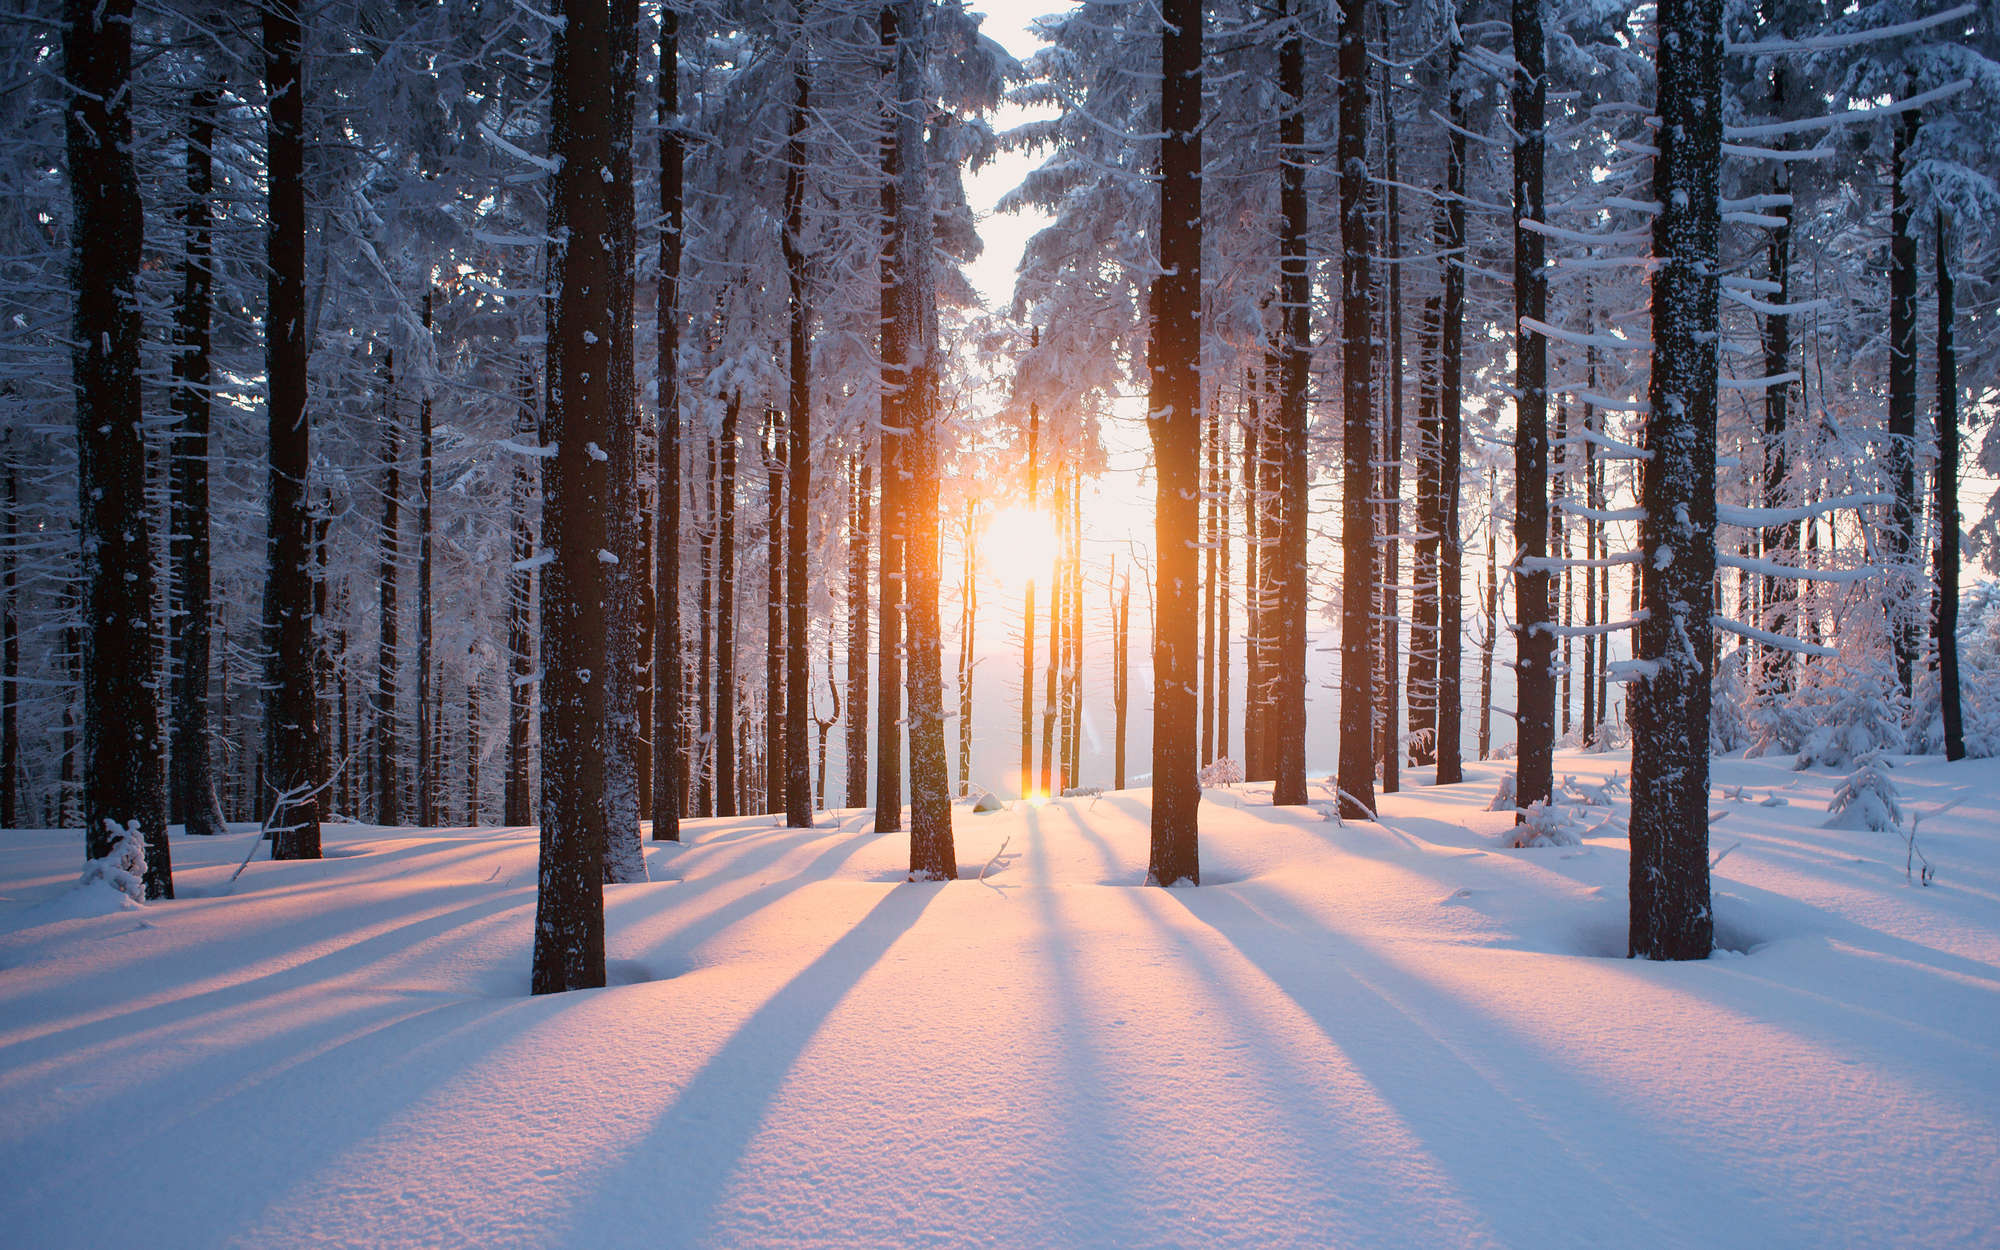             Digital behang Sneeuw in het winterse bos - Premium glad fleece
        